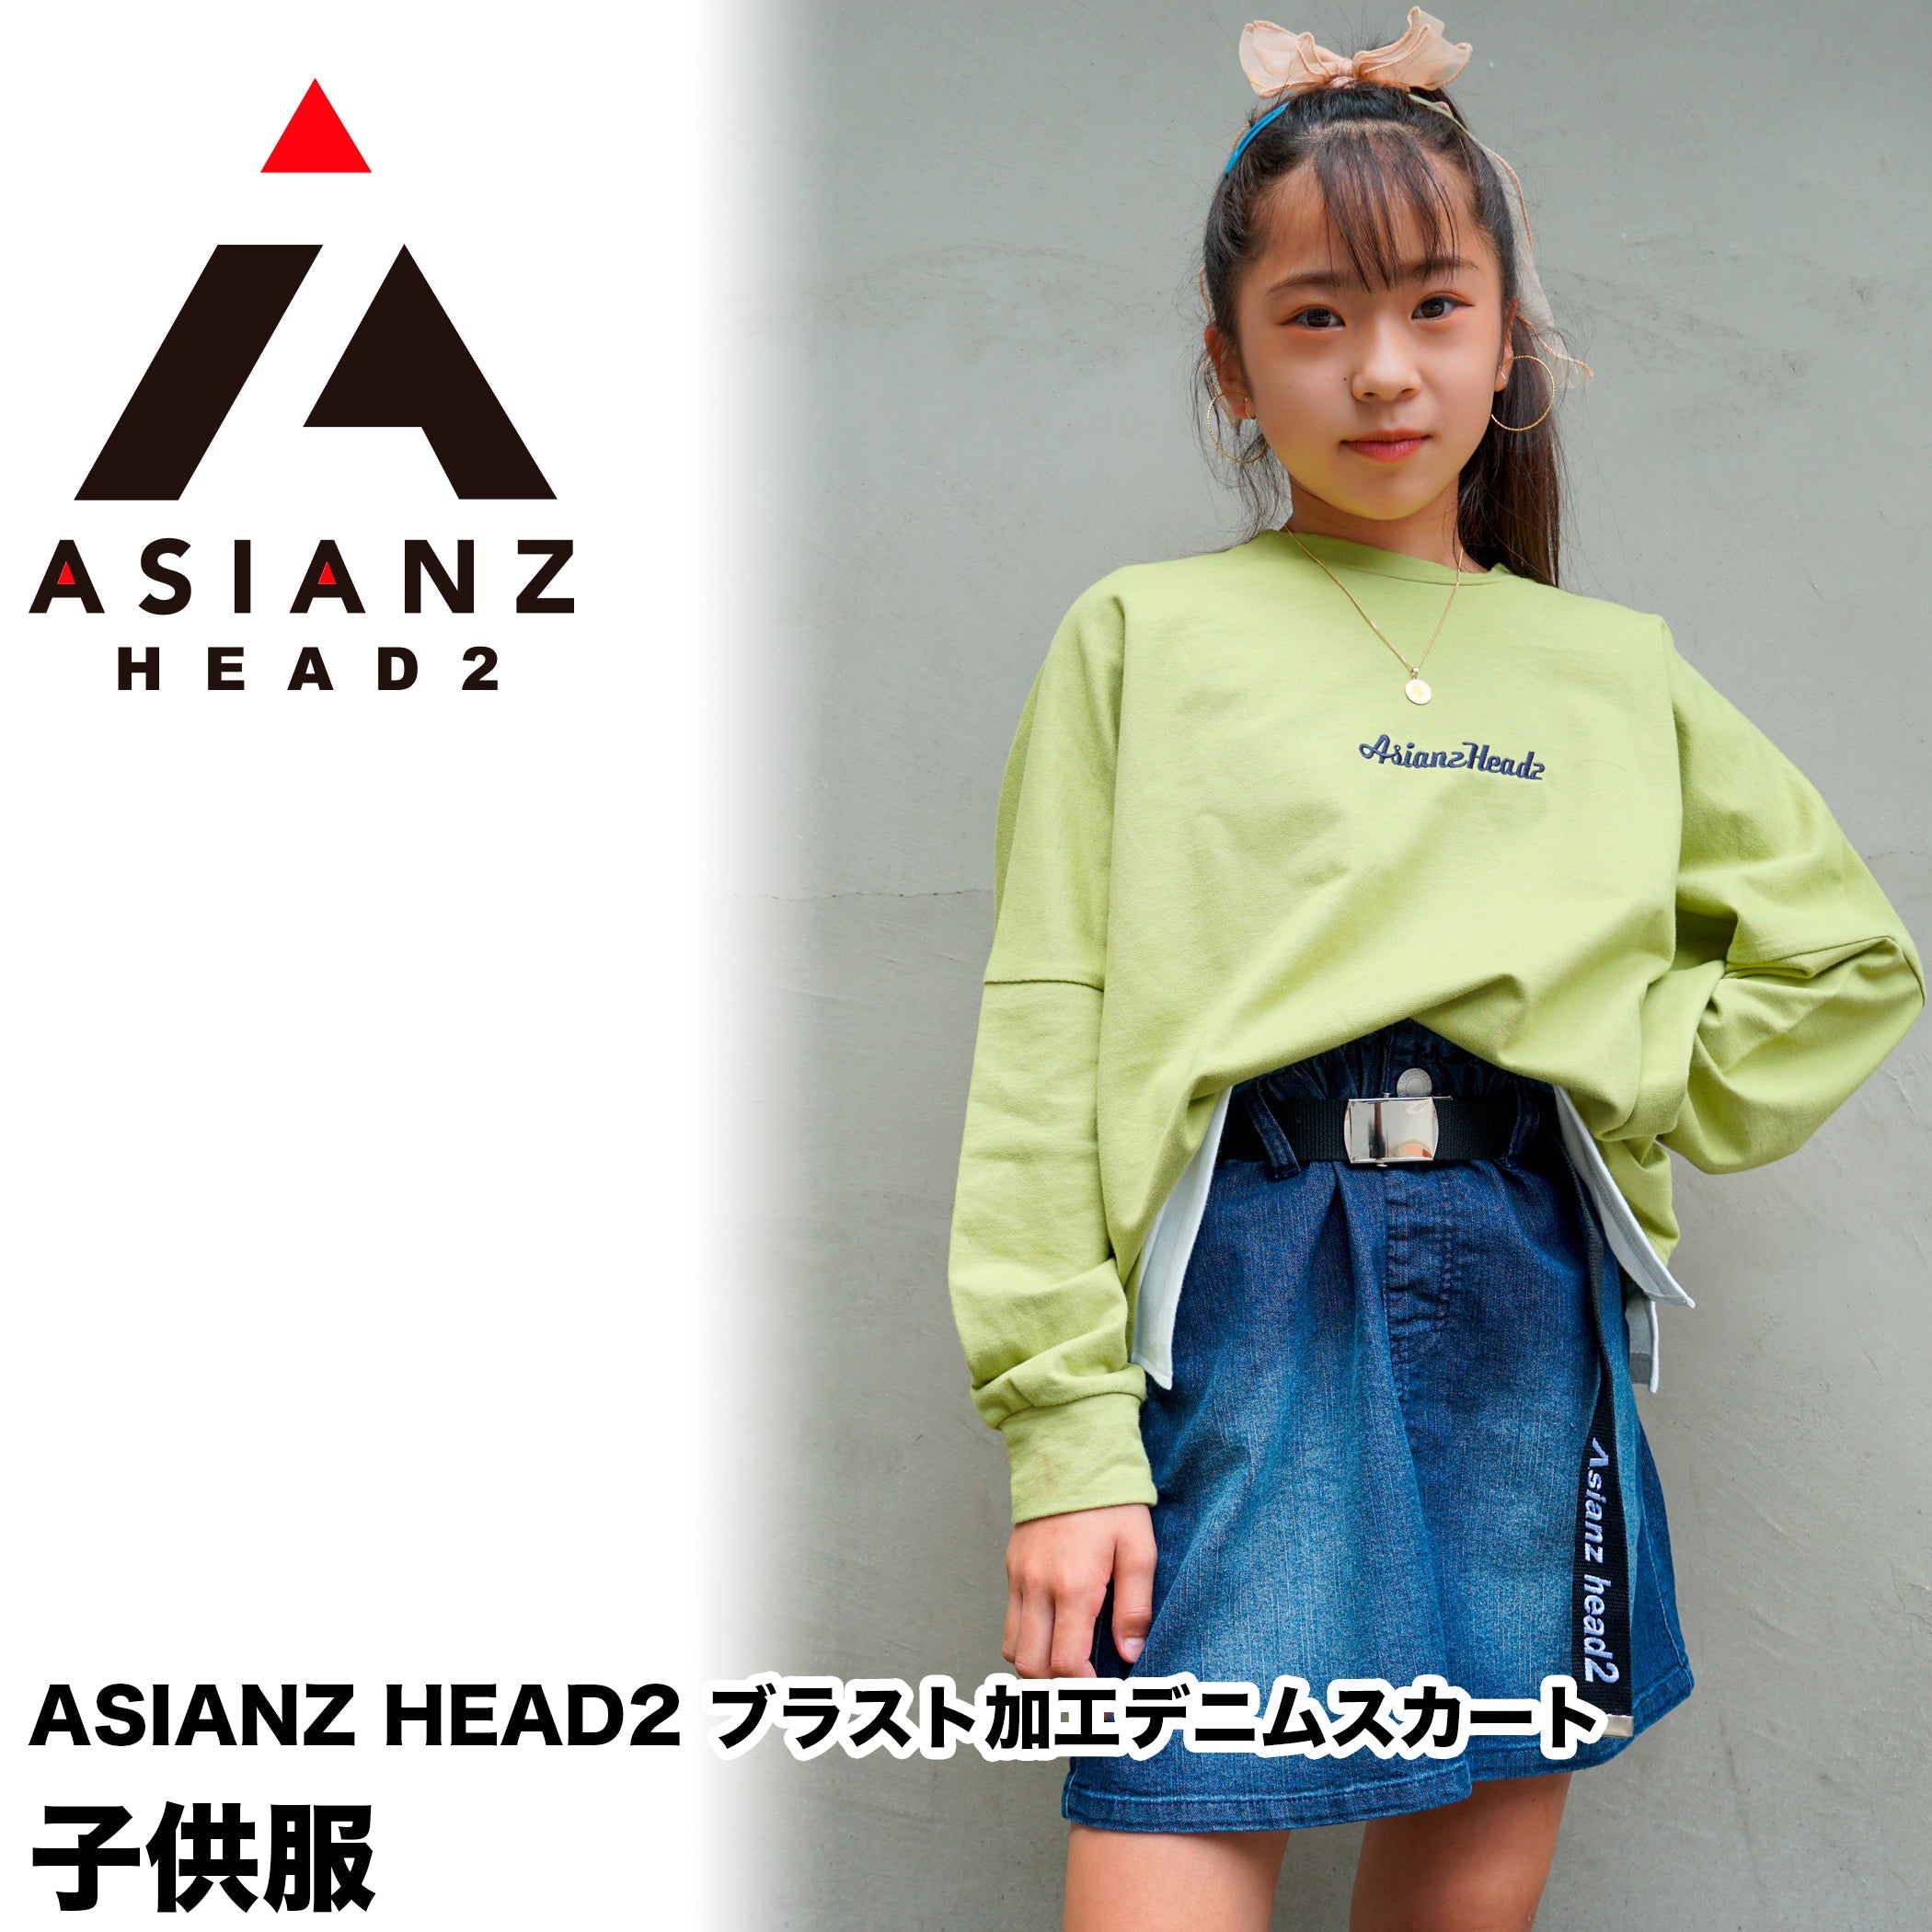 ASIANZ HEAD2 ブラスト加工デニムスカート キッズウェアー